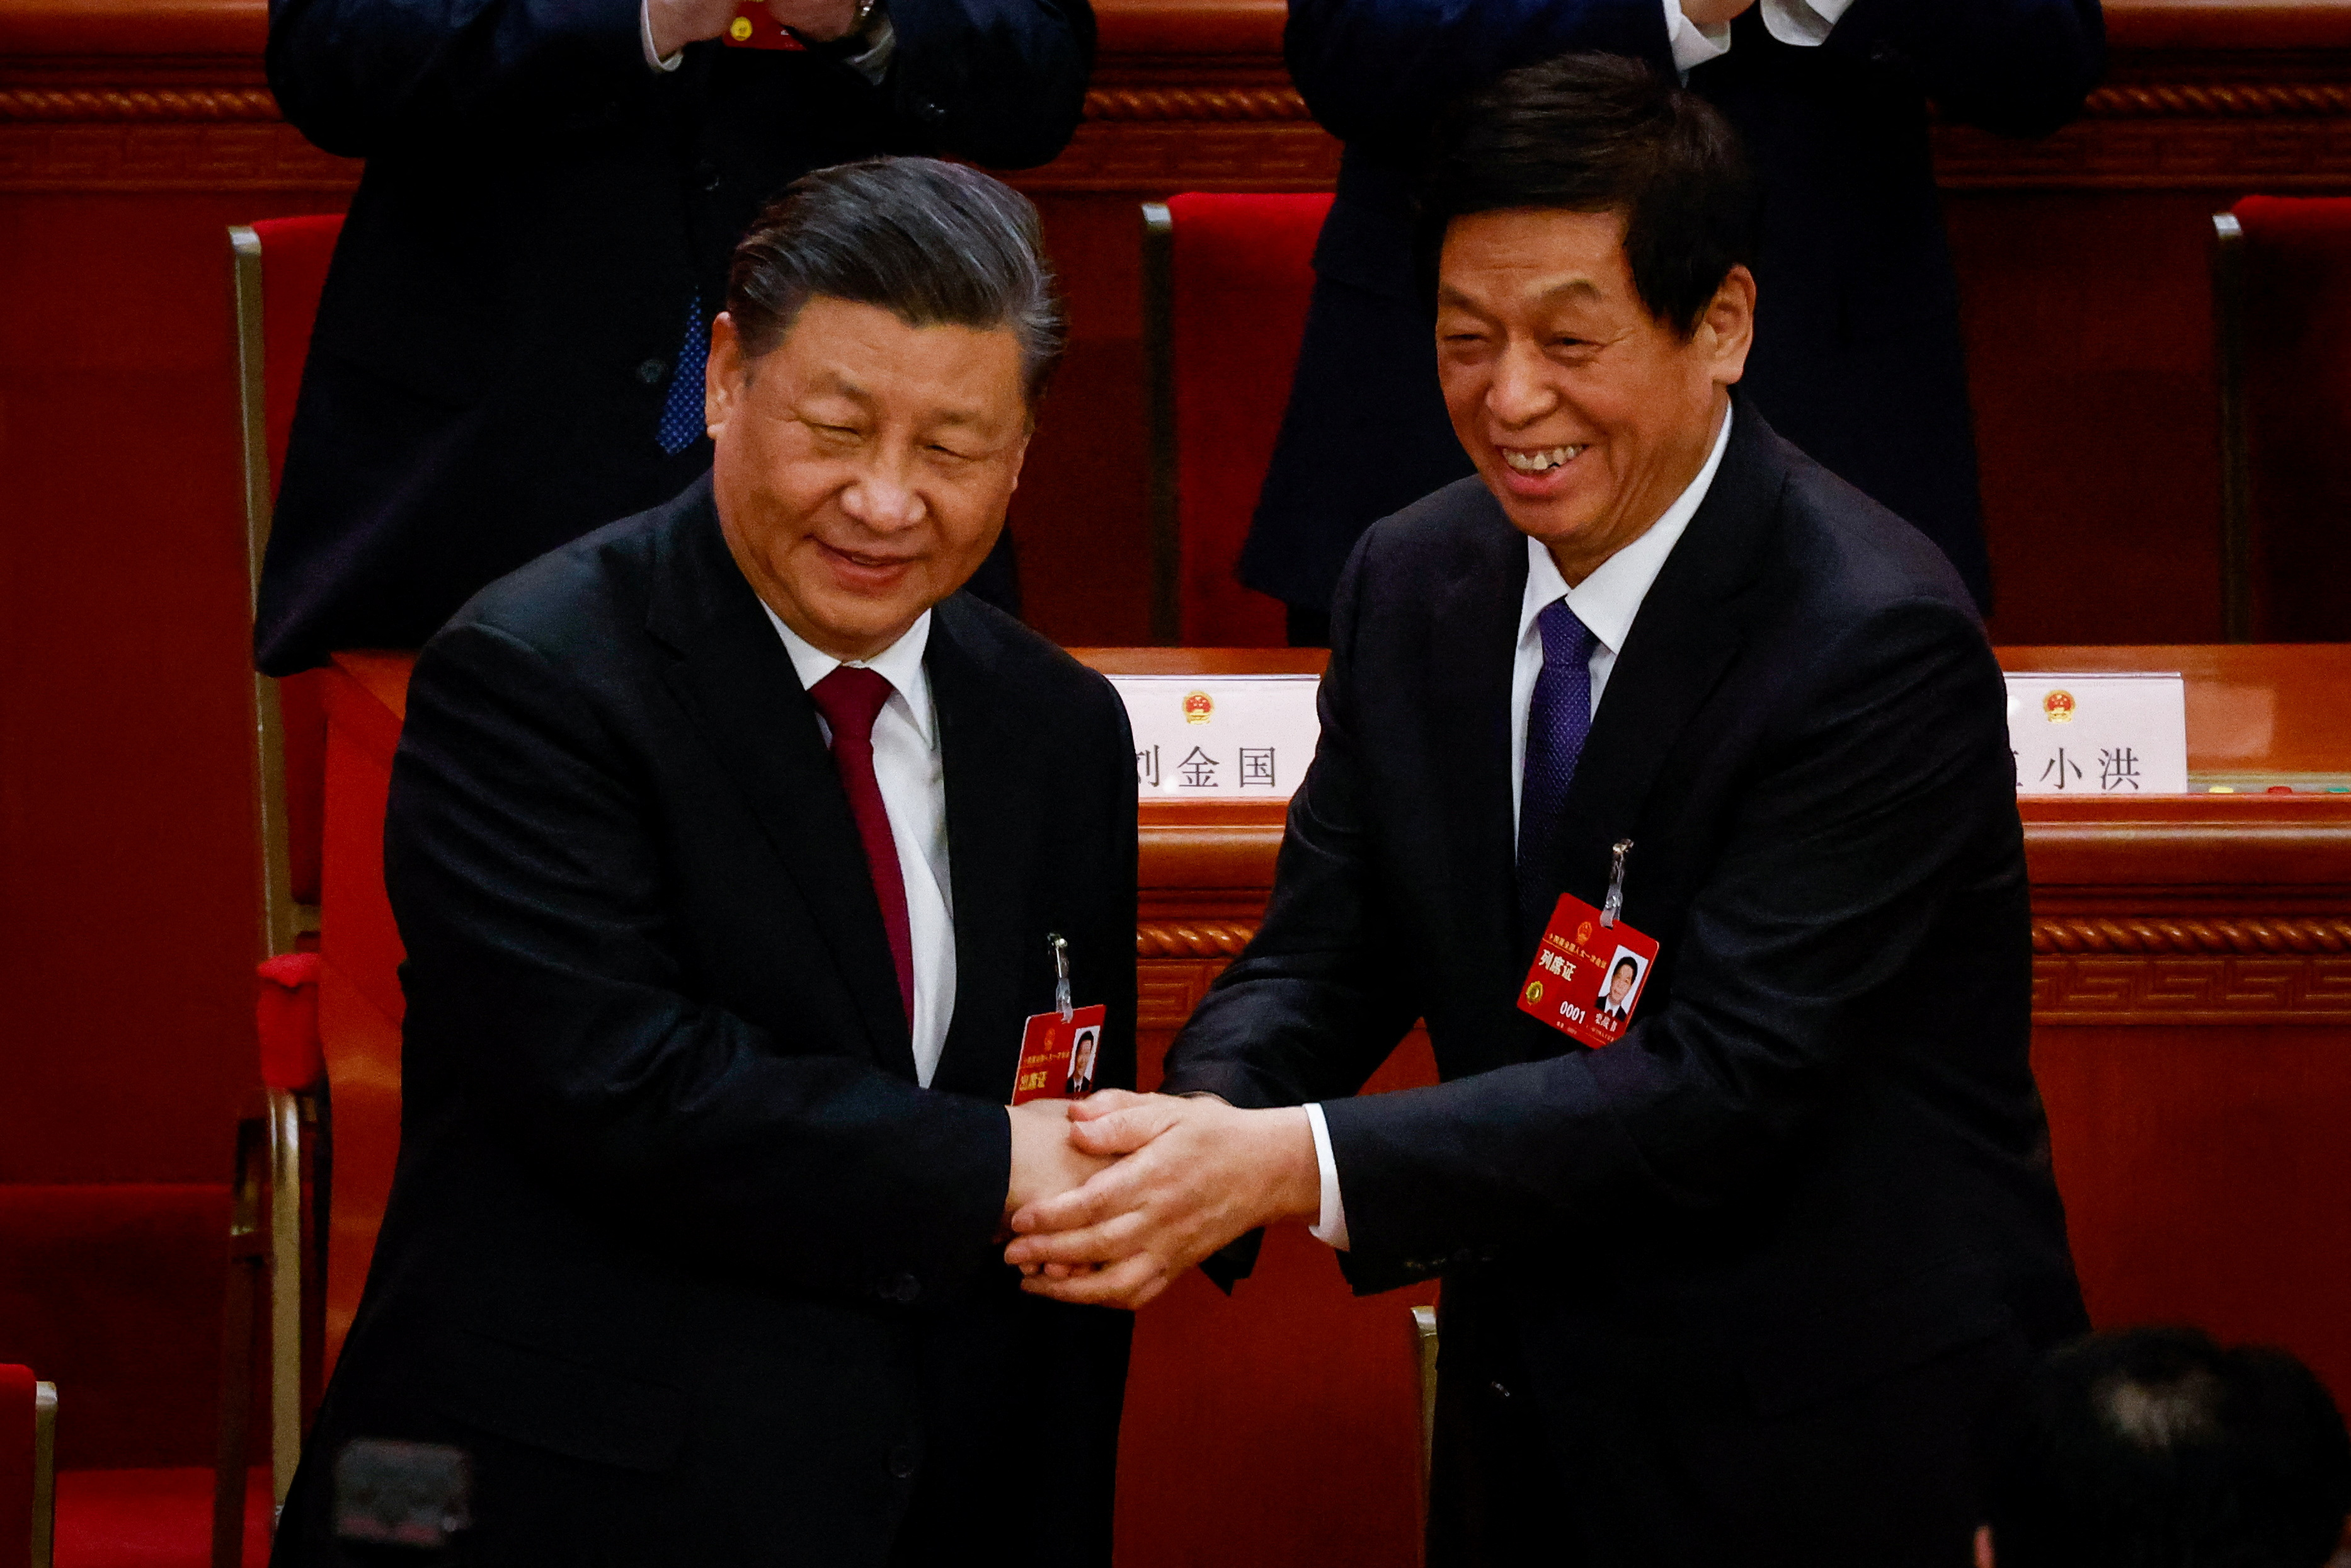 Reelegido en octubre al frente del Partido Comunista (PCCh), Xi obtuvo este jueves un tercer mandato de cinco años como presidente, erigiéndose como el dirigente más poderoso desde Mao Zedong. (REUTERS)